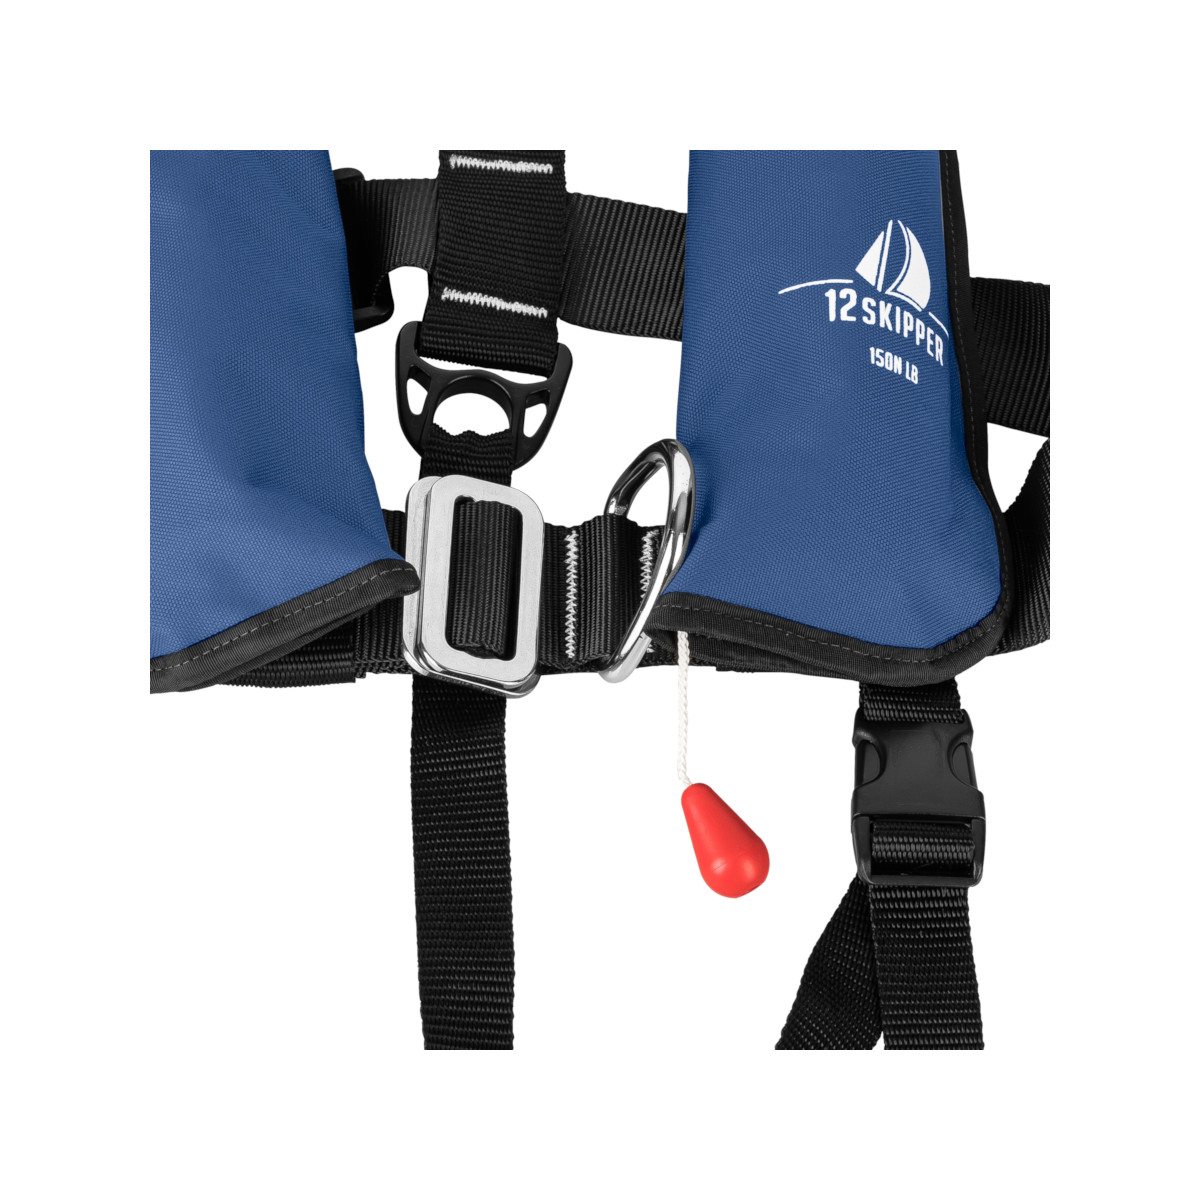 12skipper gilet de sauvetage automatique pour enfants 150N ISO avec harnais - bleu marine